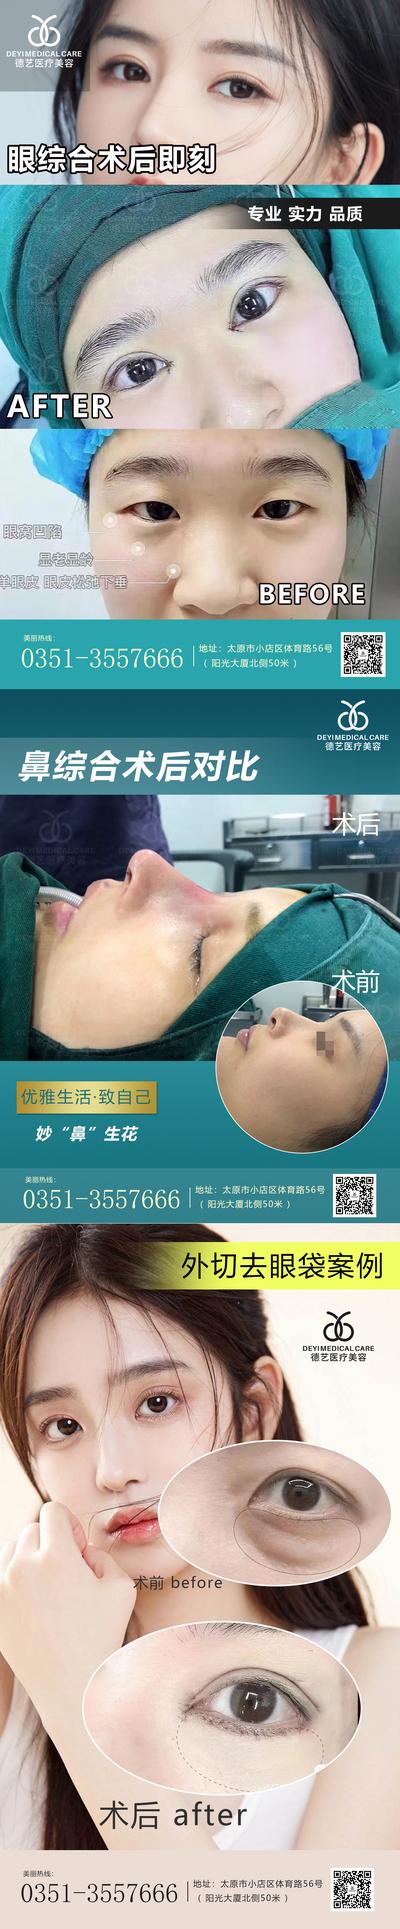 【南门网】海报 医美 整形 案例 对比 人物 祛抬头纹 玻尿酸 填充